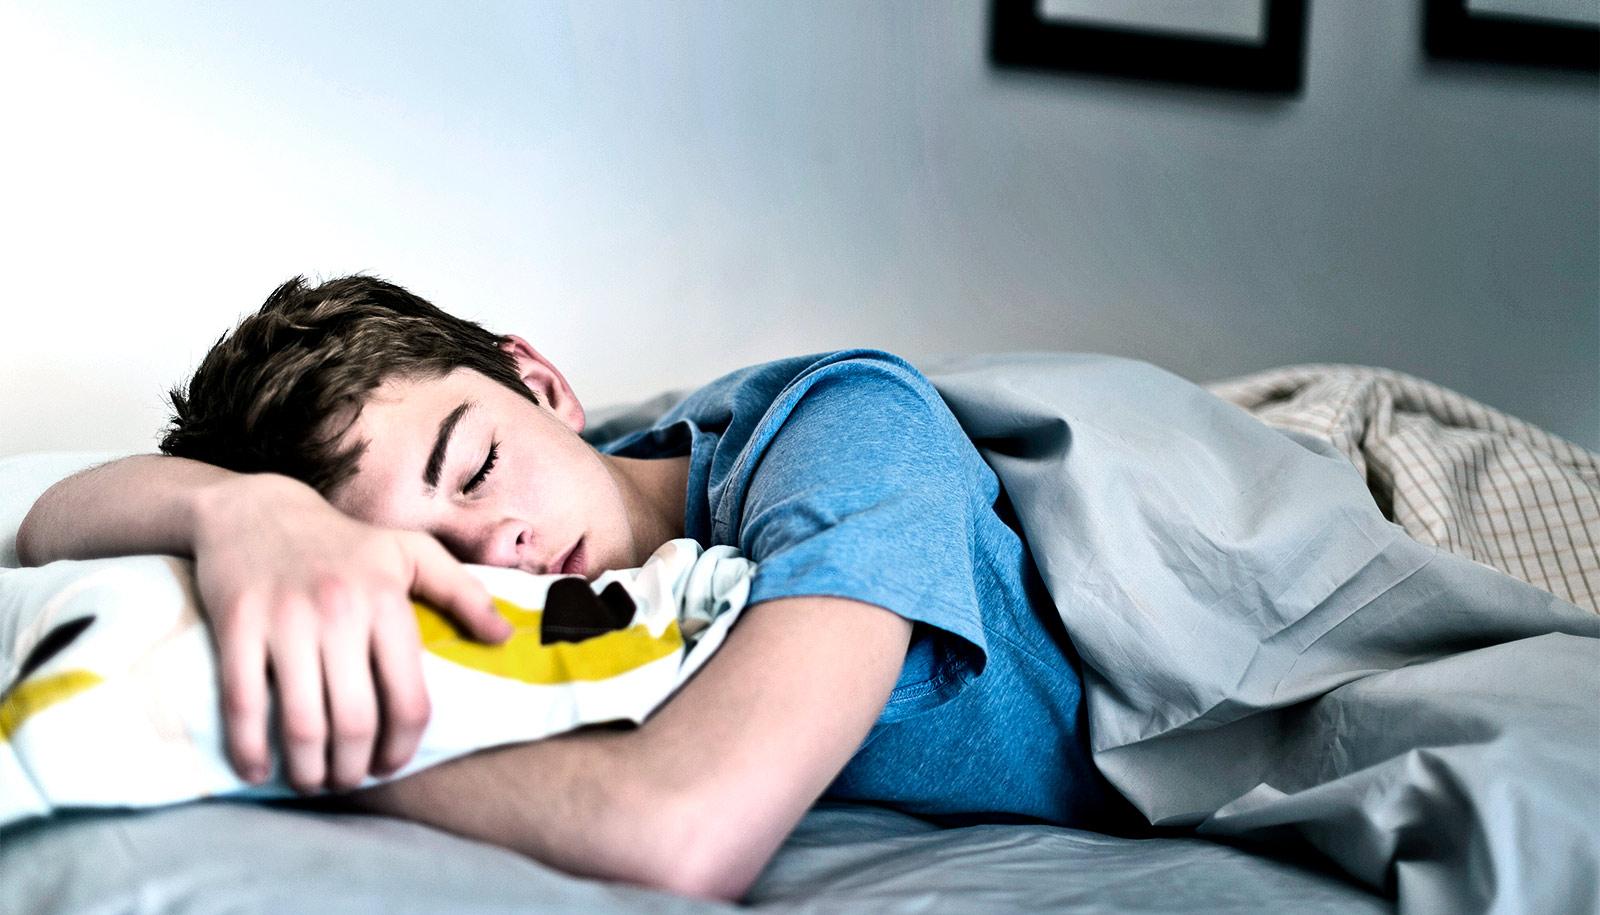 Manjak sna kod tinejdžera može izazvati veliki zdravstveni problem